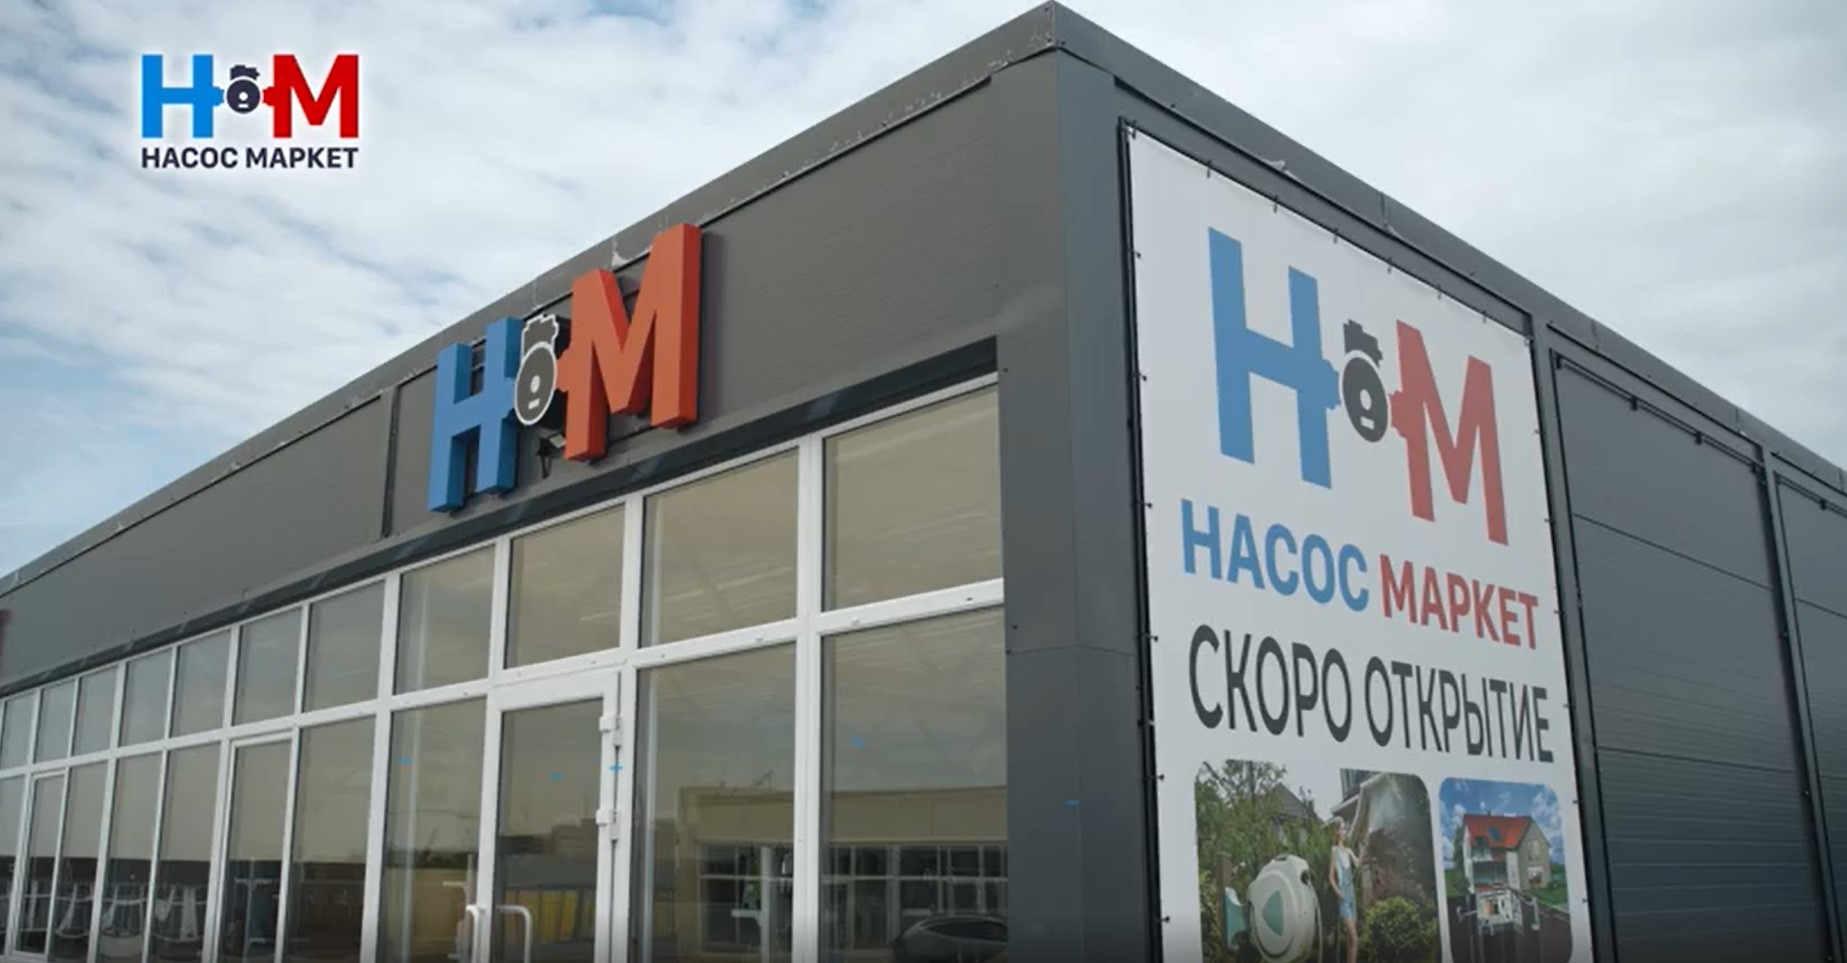 Во Владимире открылся новый магазин «Насос Маркет»